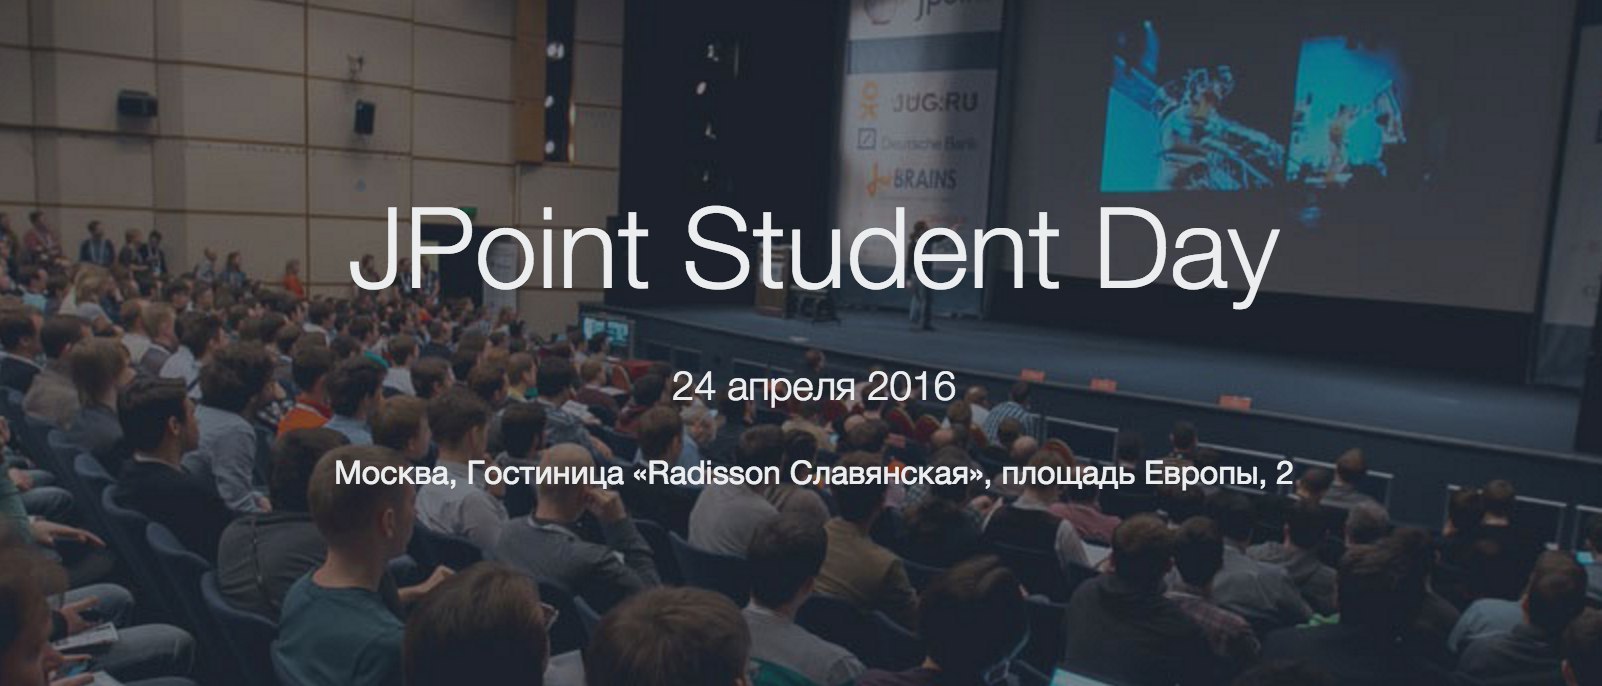 F.A.Q. по Java-конференции для студентов в Москве - 4